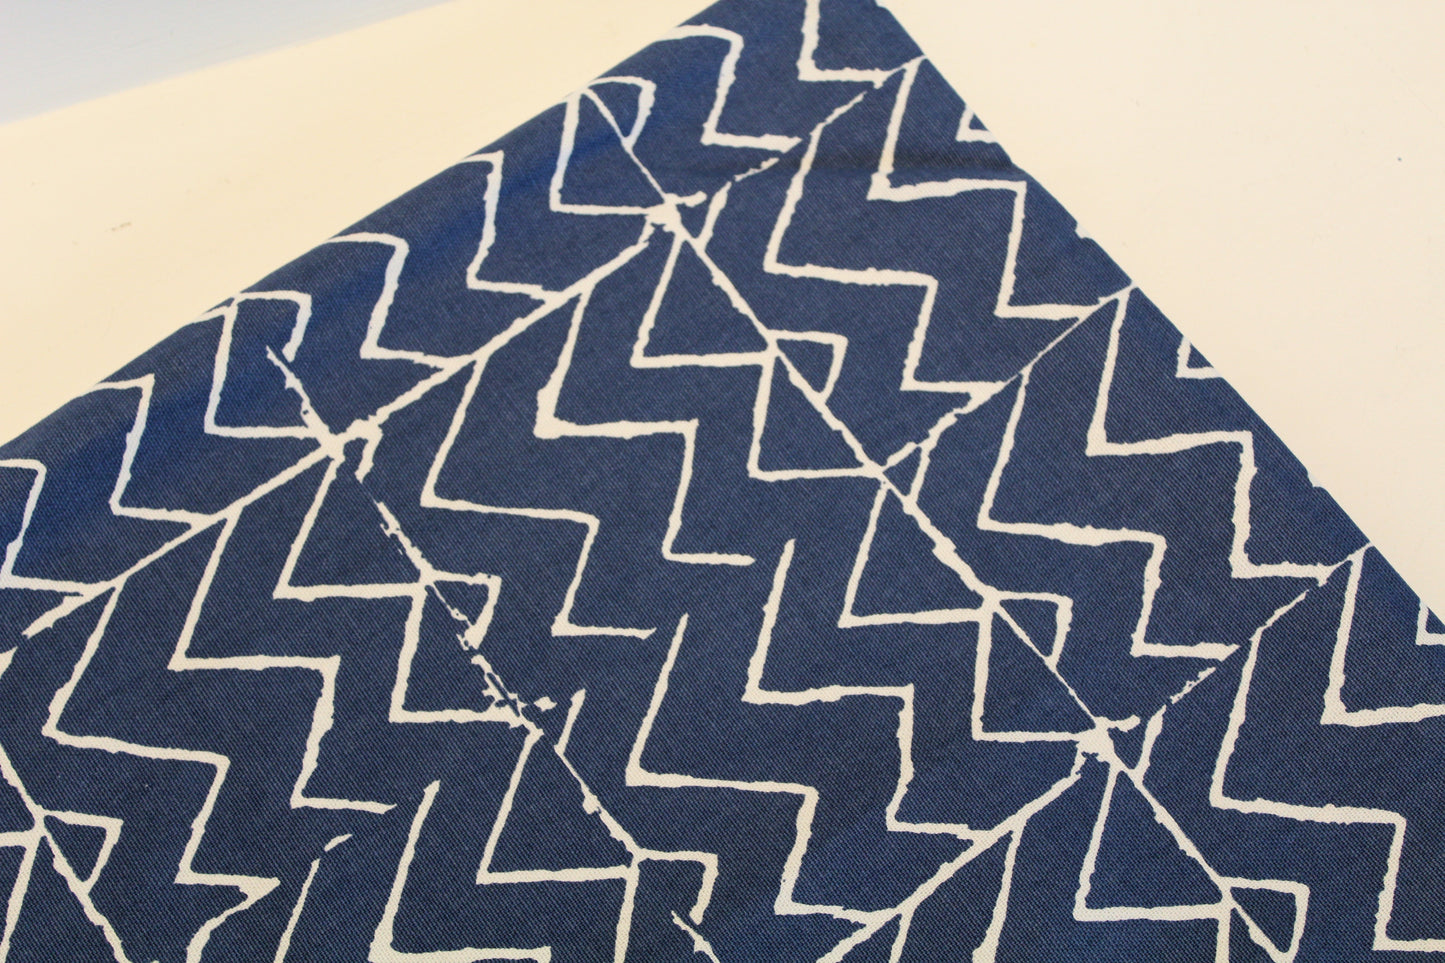 Blue & White Mali - Cushion Cover - 44cm x 41cm